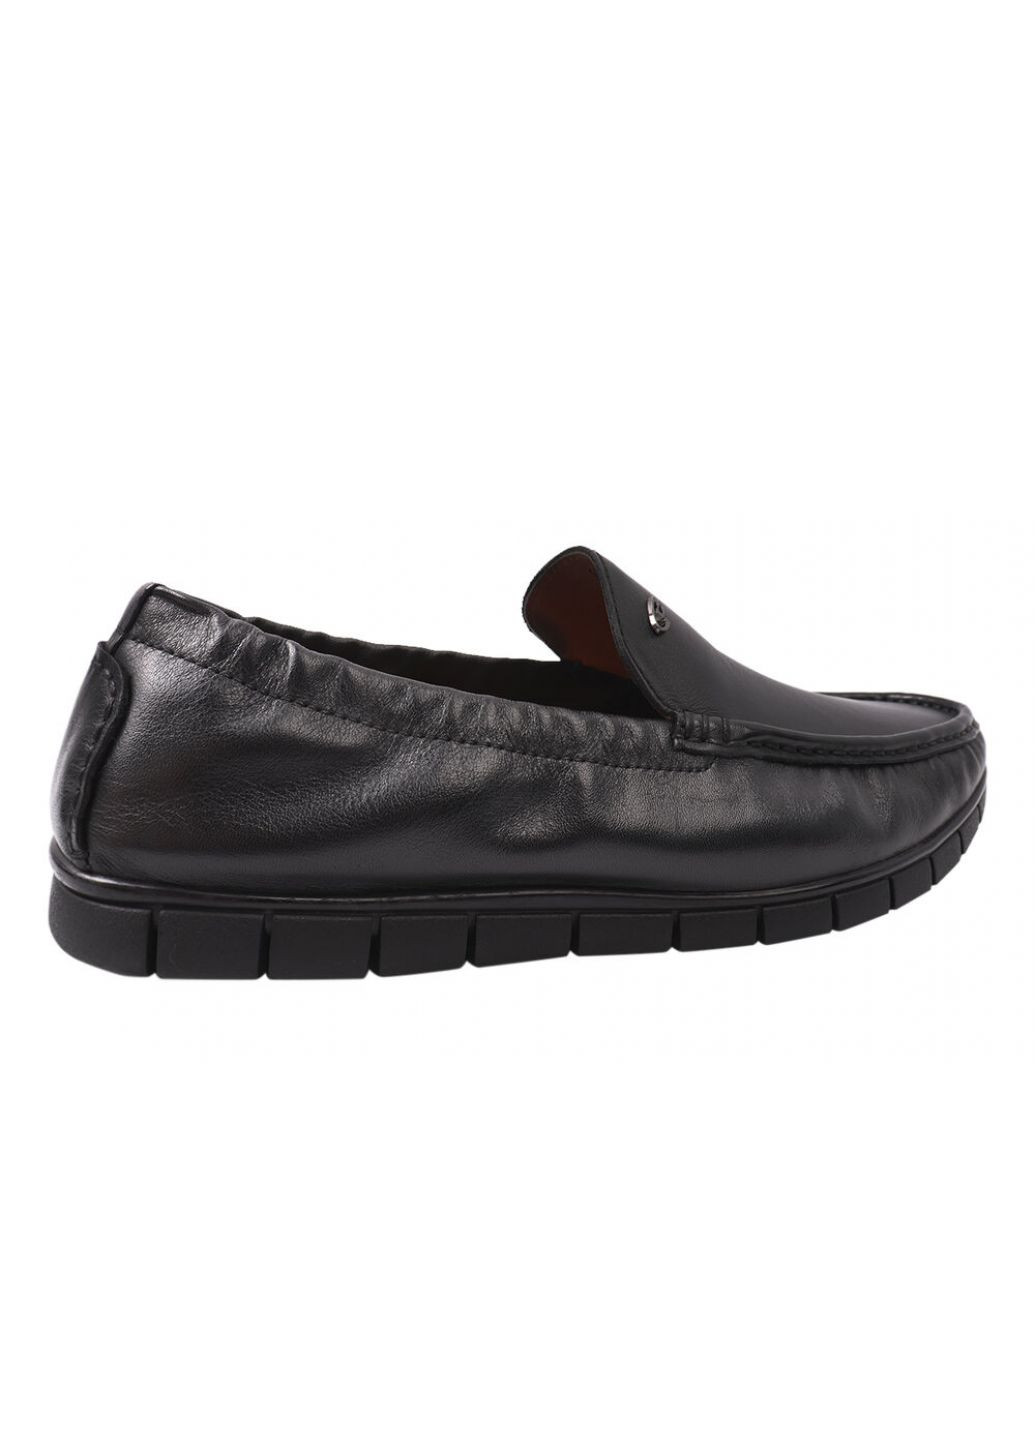 Туфлі чоловічі з натуральної шкіри, на низькому ходу, чорні, Lido Marinozi Lido Marinozzi 211-21dtc (257429076)